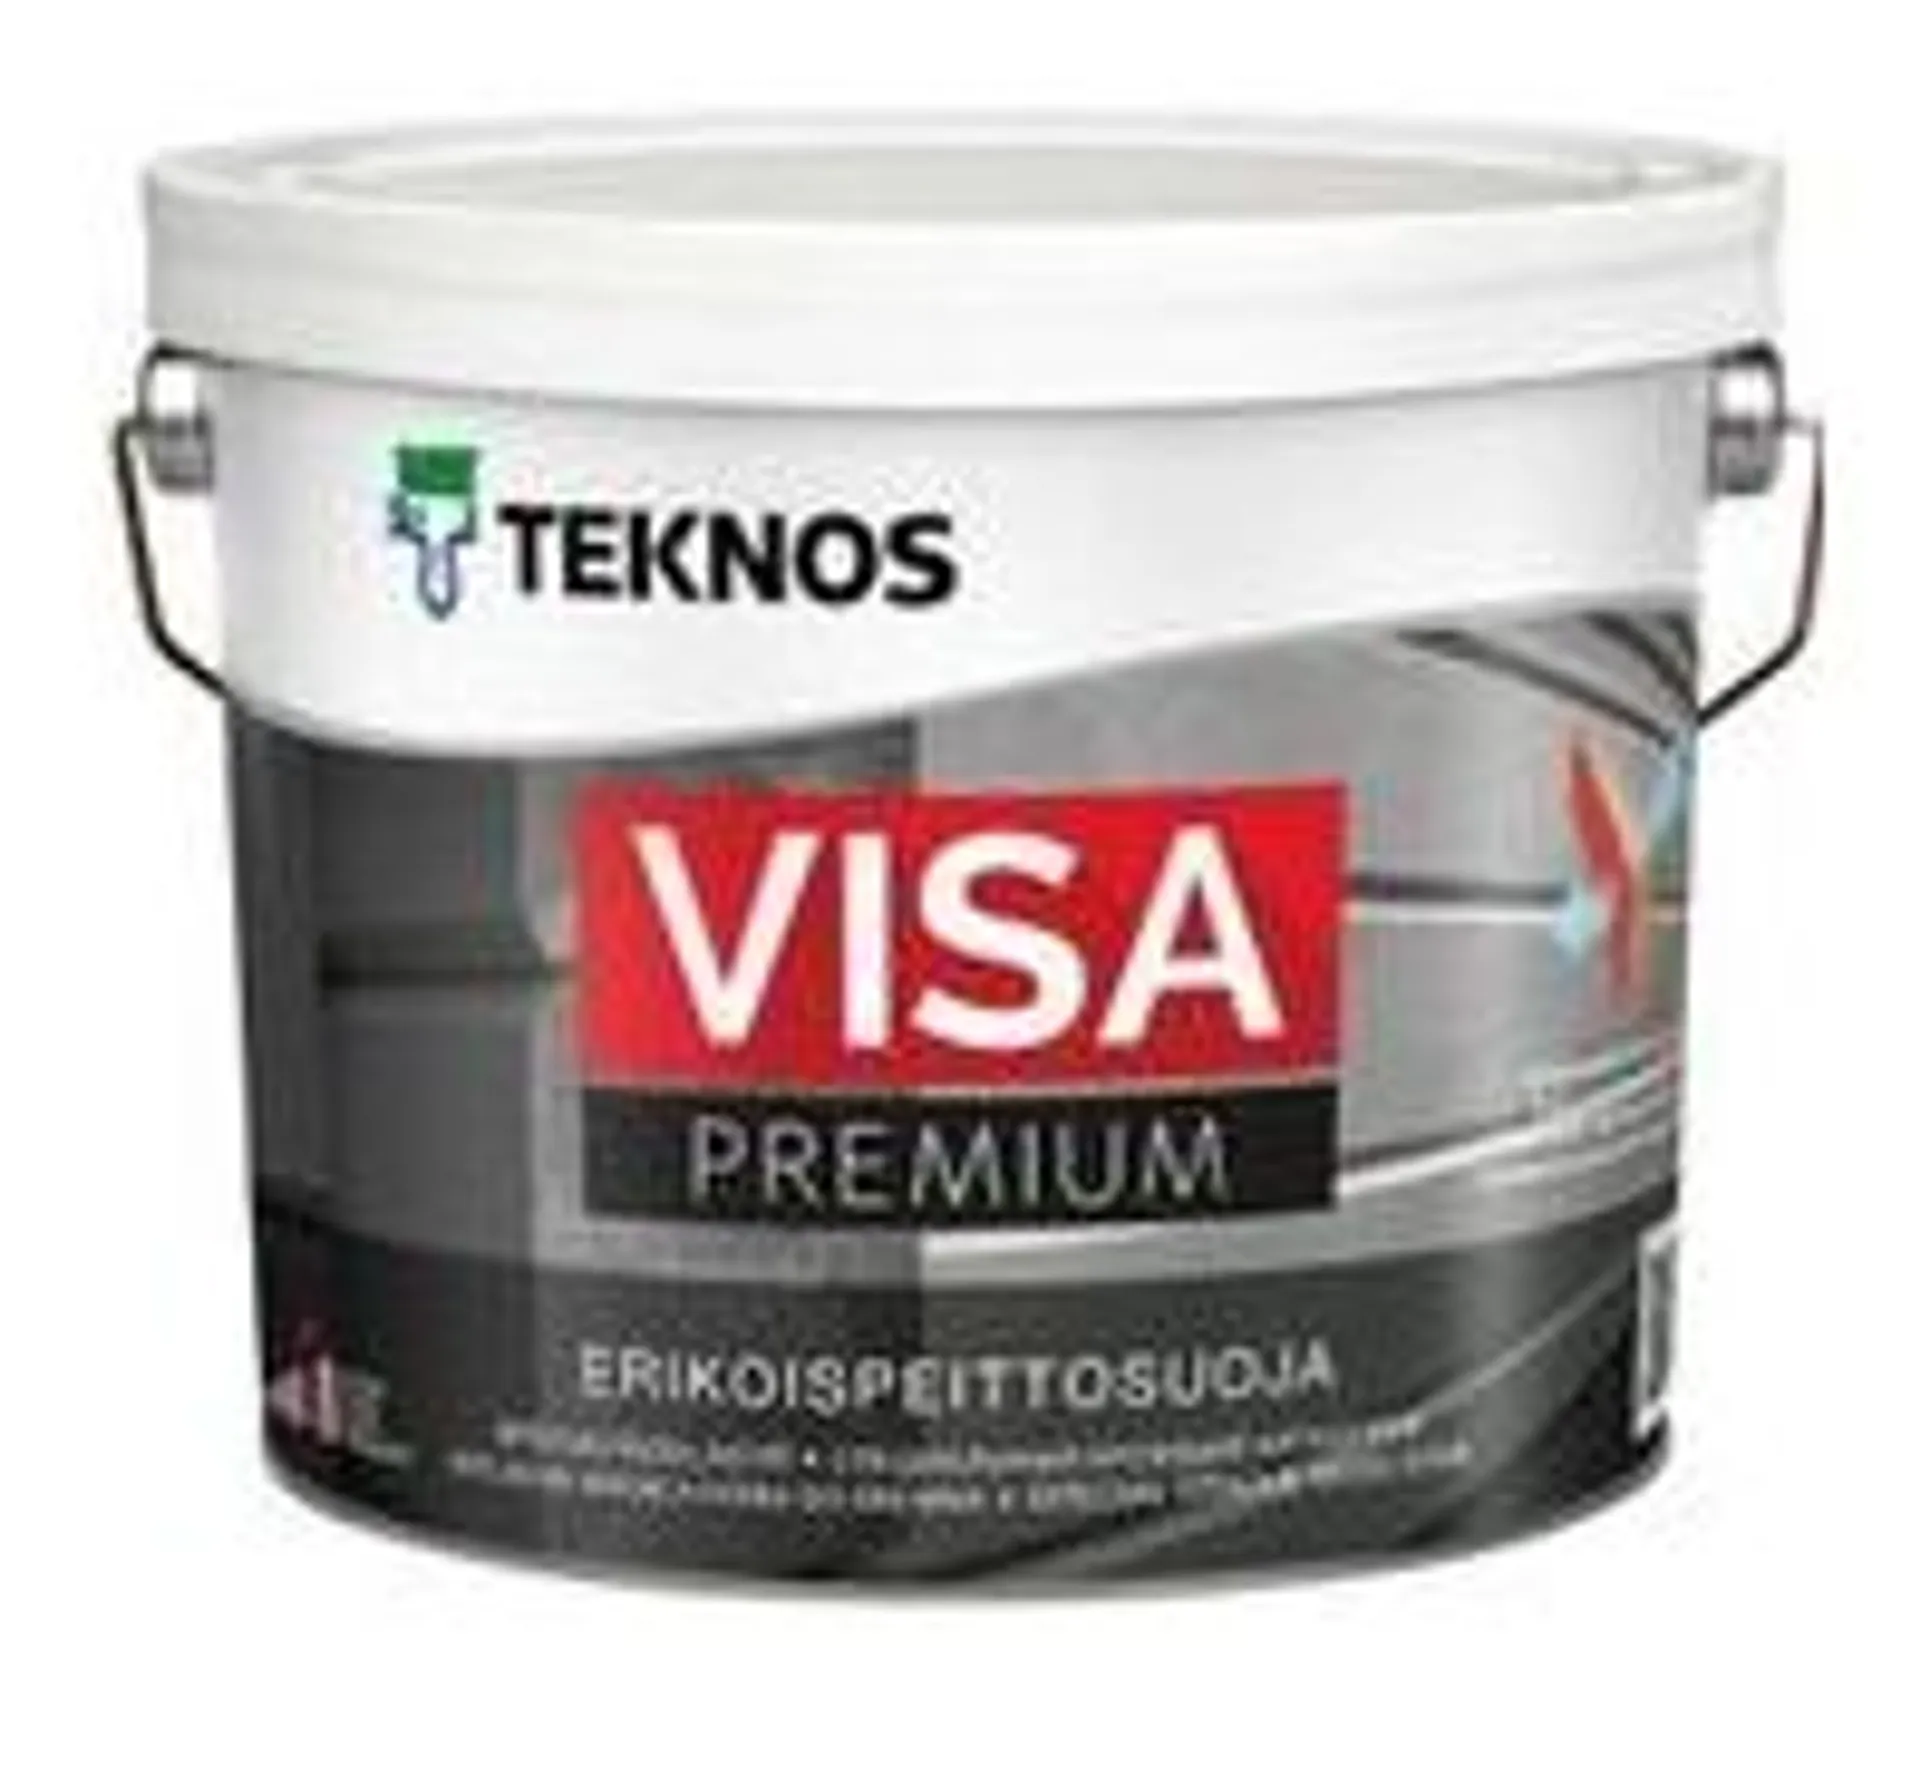 Teknos Visa Premium erikoispeittosuoja maali 2,7l PM1valkoinen